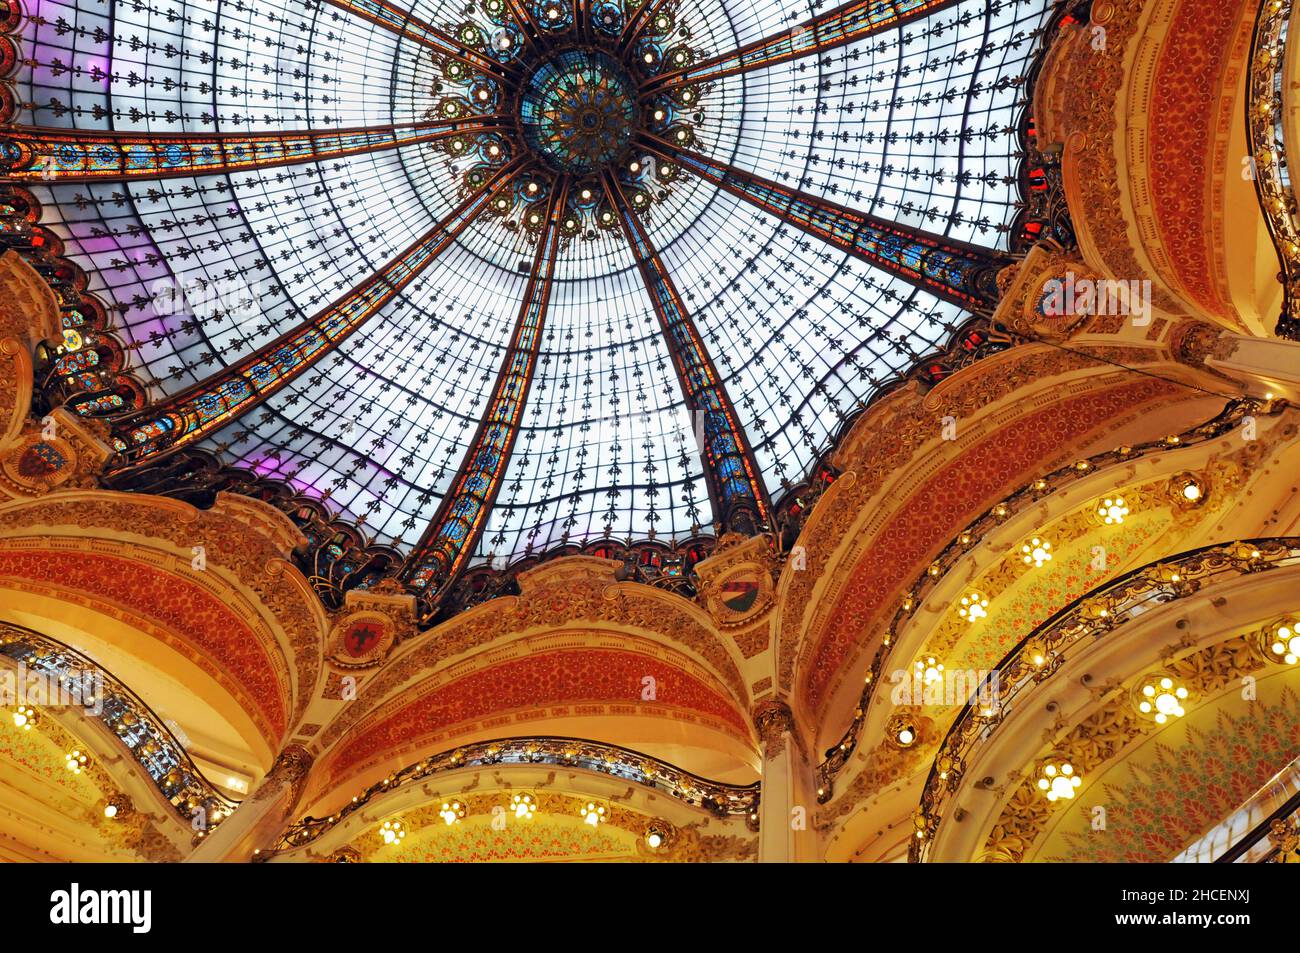 La cupola in vetro colorato in stile art nouveau nel grande magazzino Galeries Lafayette di Parigi è stata costruita nel 1912. Foto Stock